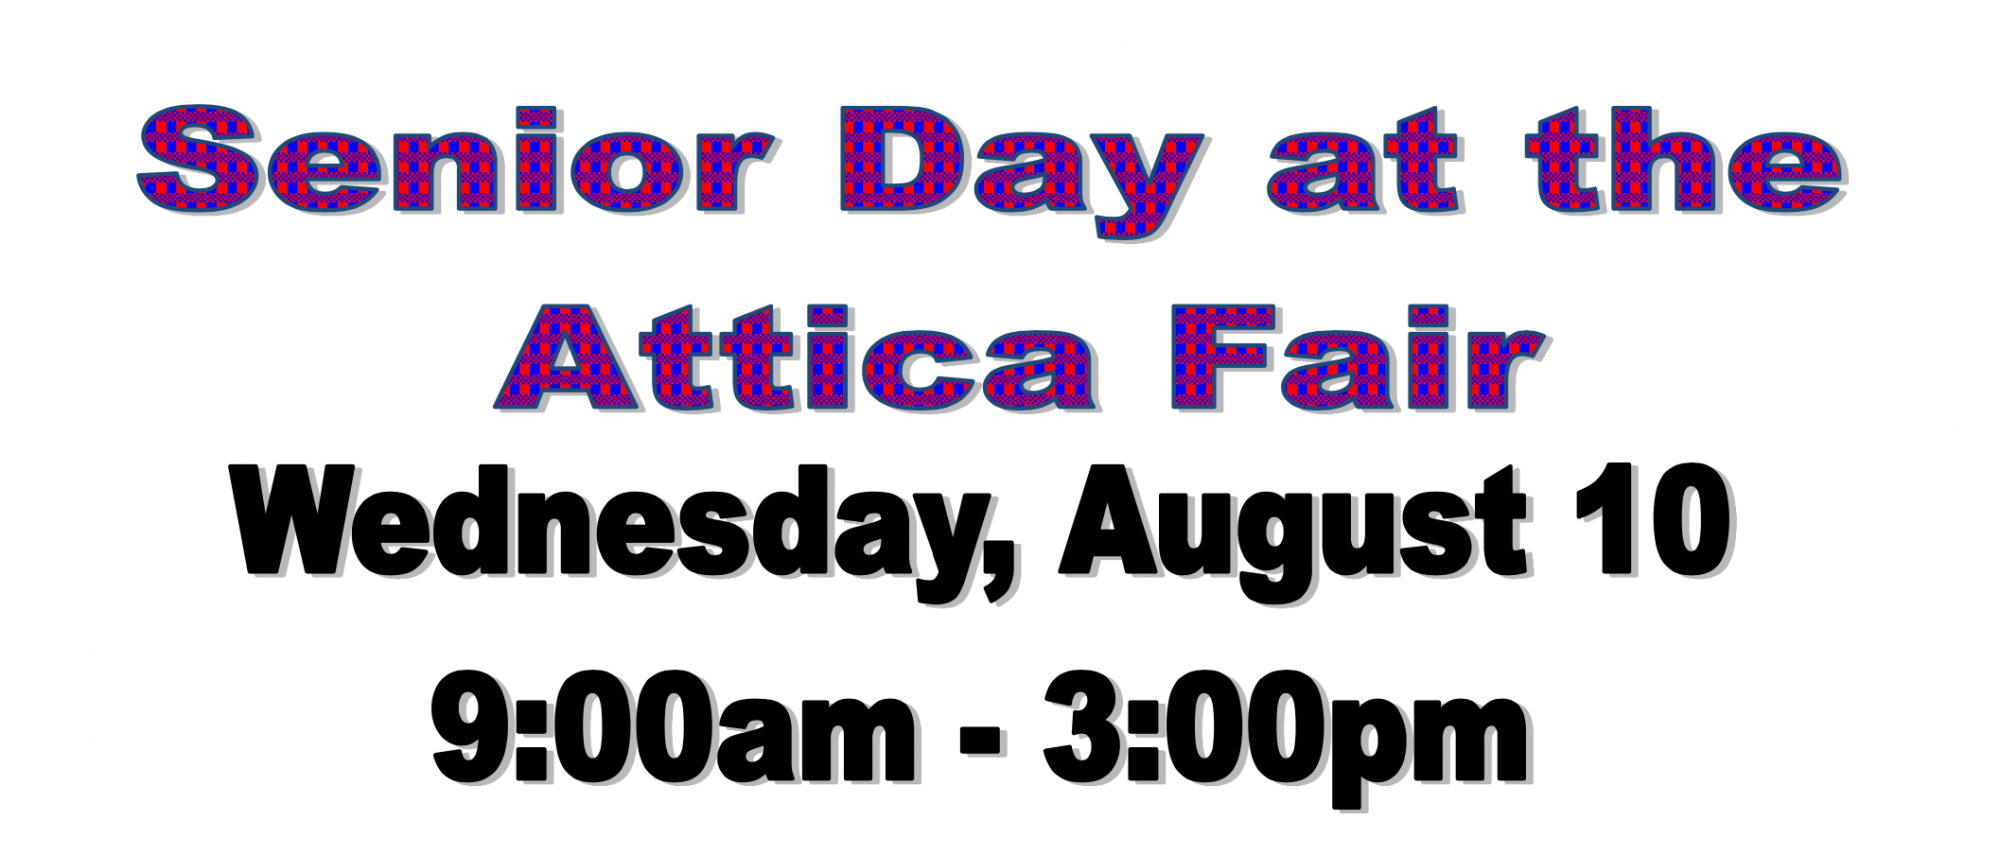 Senior Day at the Attica Fair